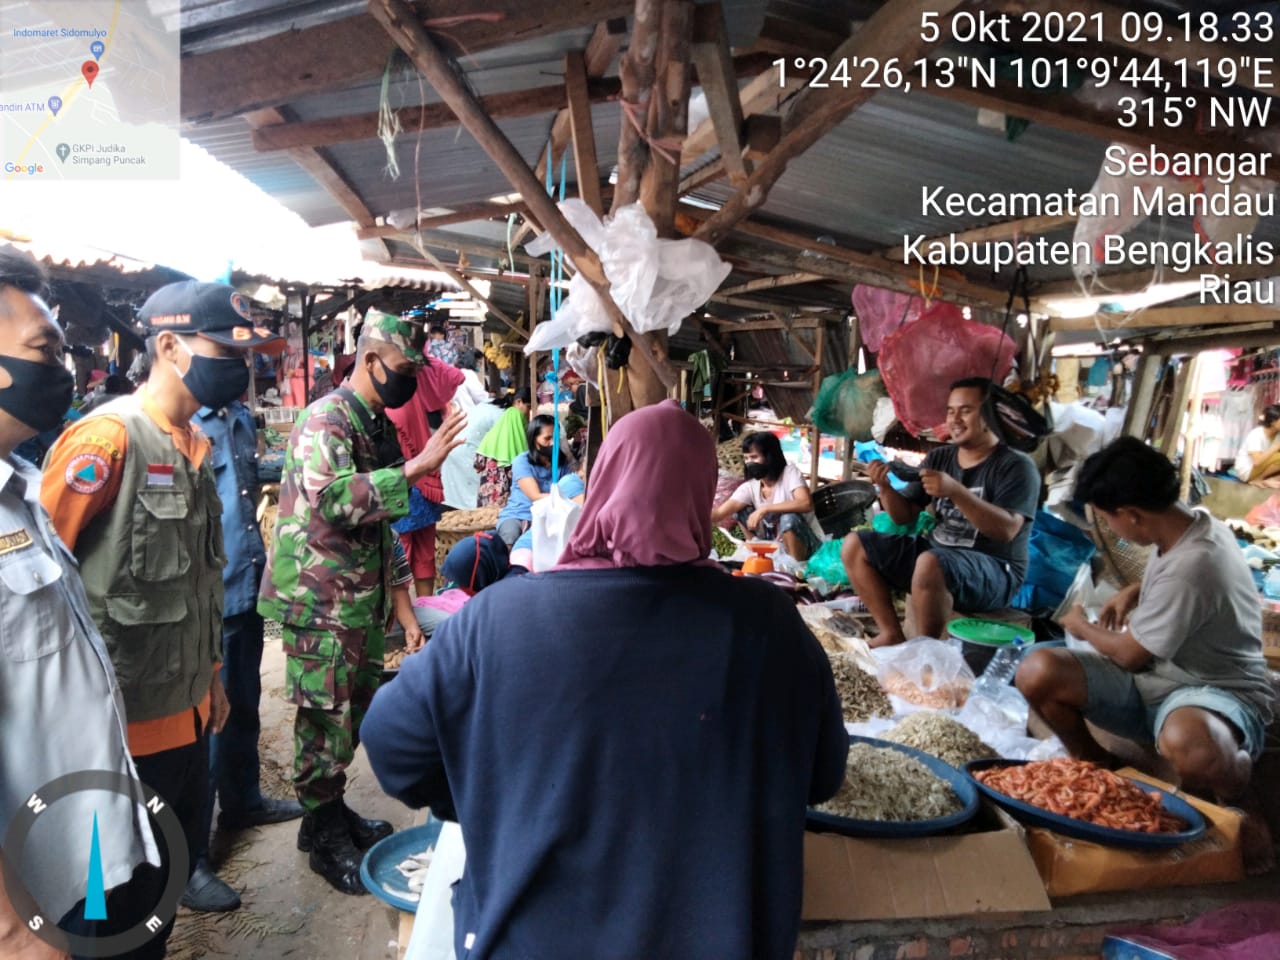 Serma Sutrisno Laksanakan Himbauan Protkes di Pasar Sidomulyo Desa Sebangar